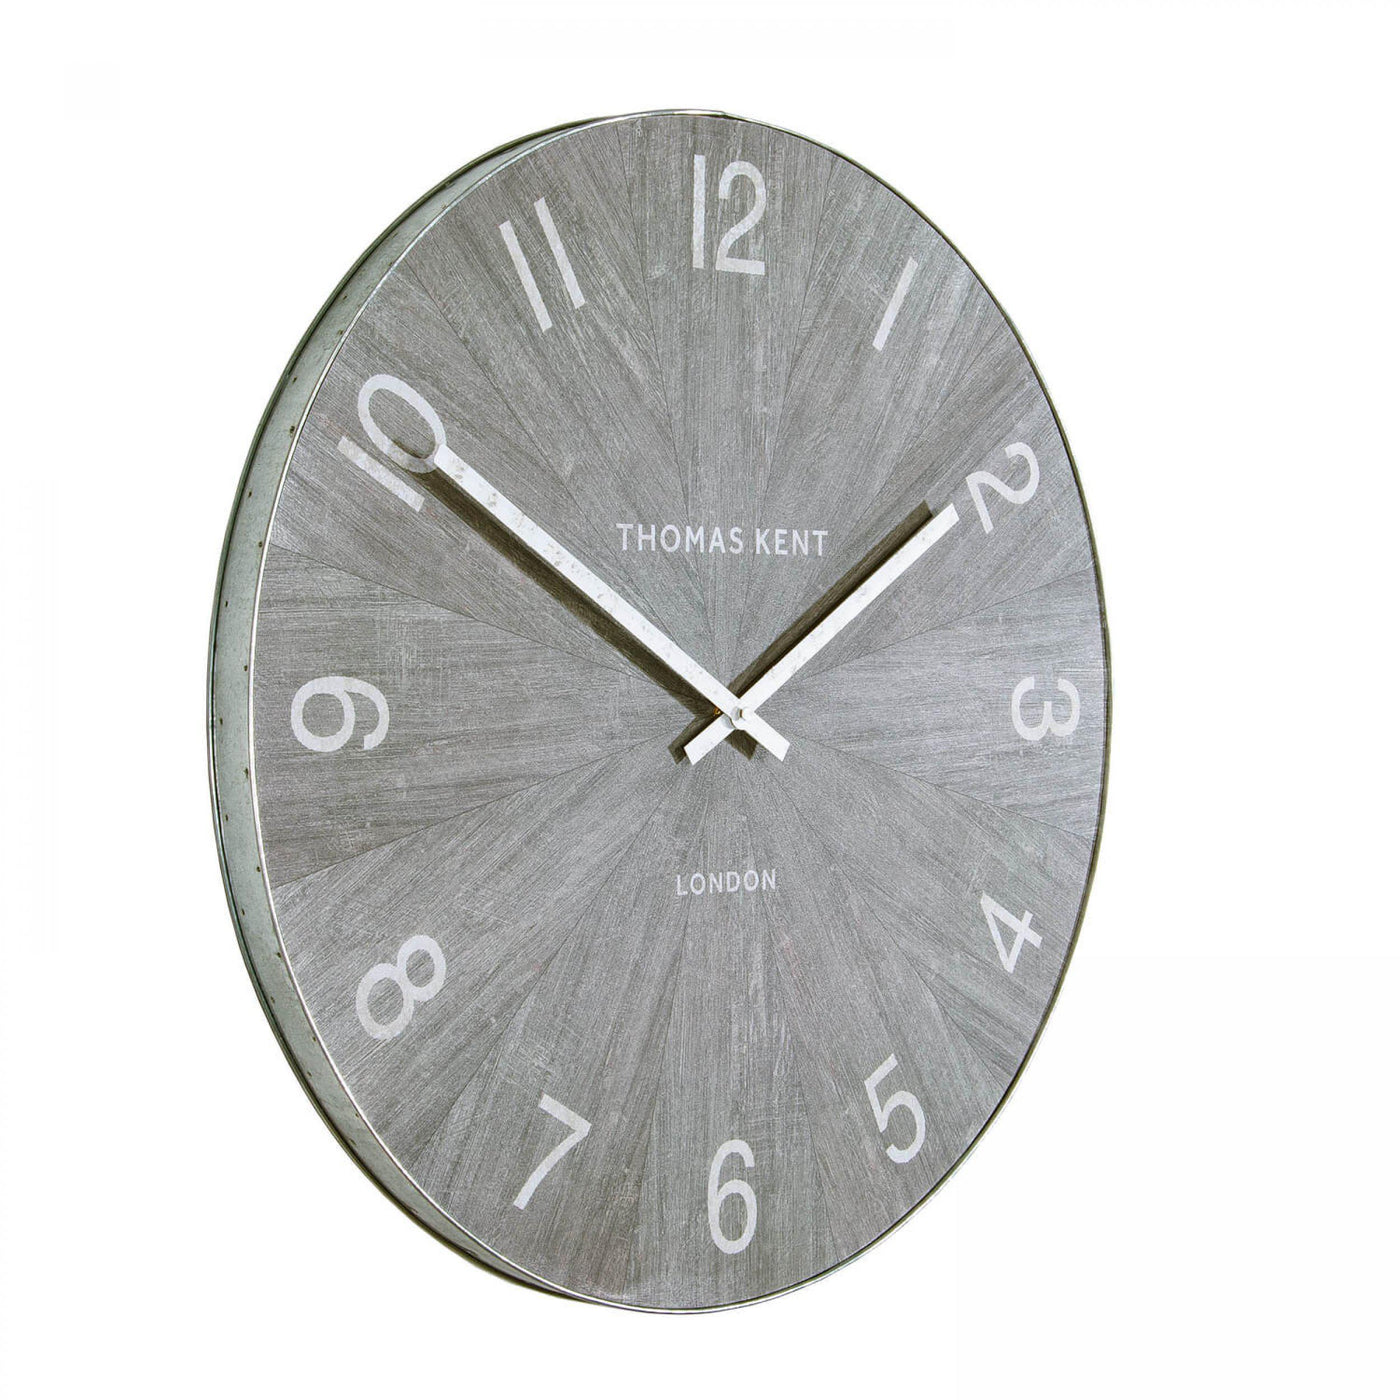 Thomas Kent London. Wharf Wall Clock 30" (76cm) Limestone - timeframedclocks